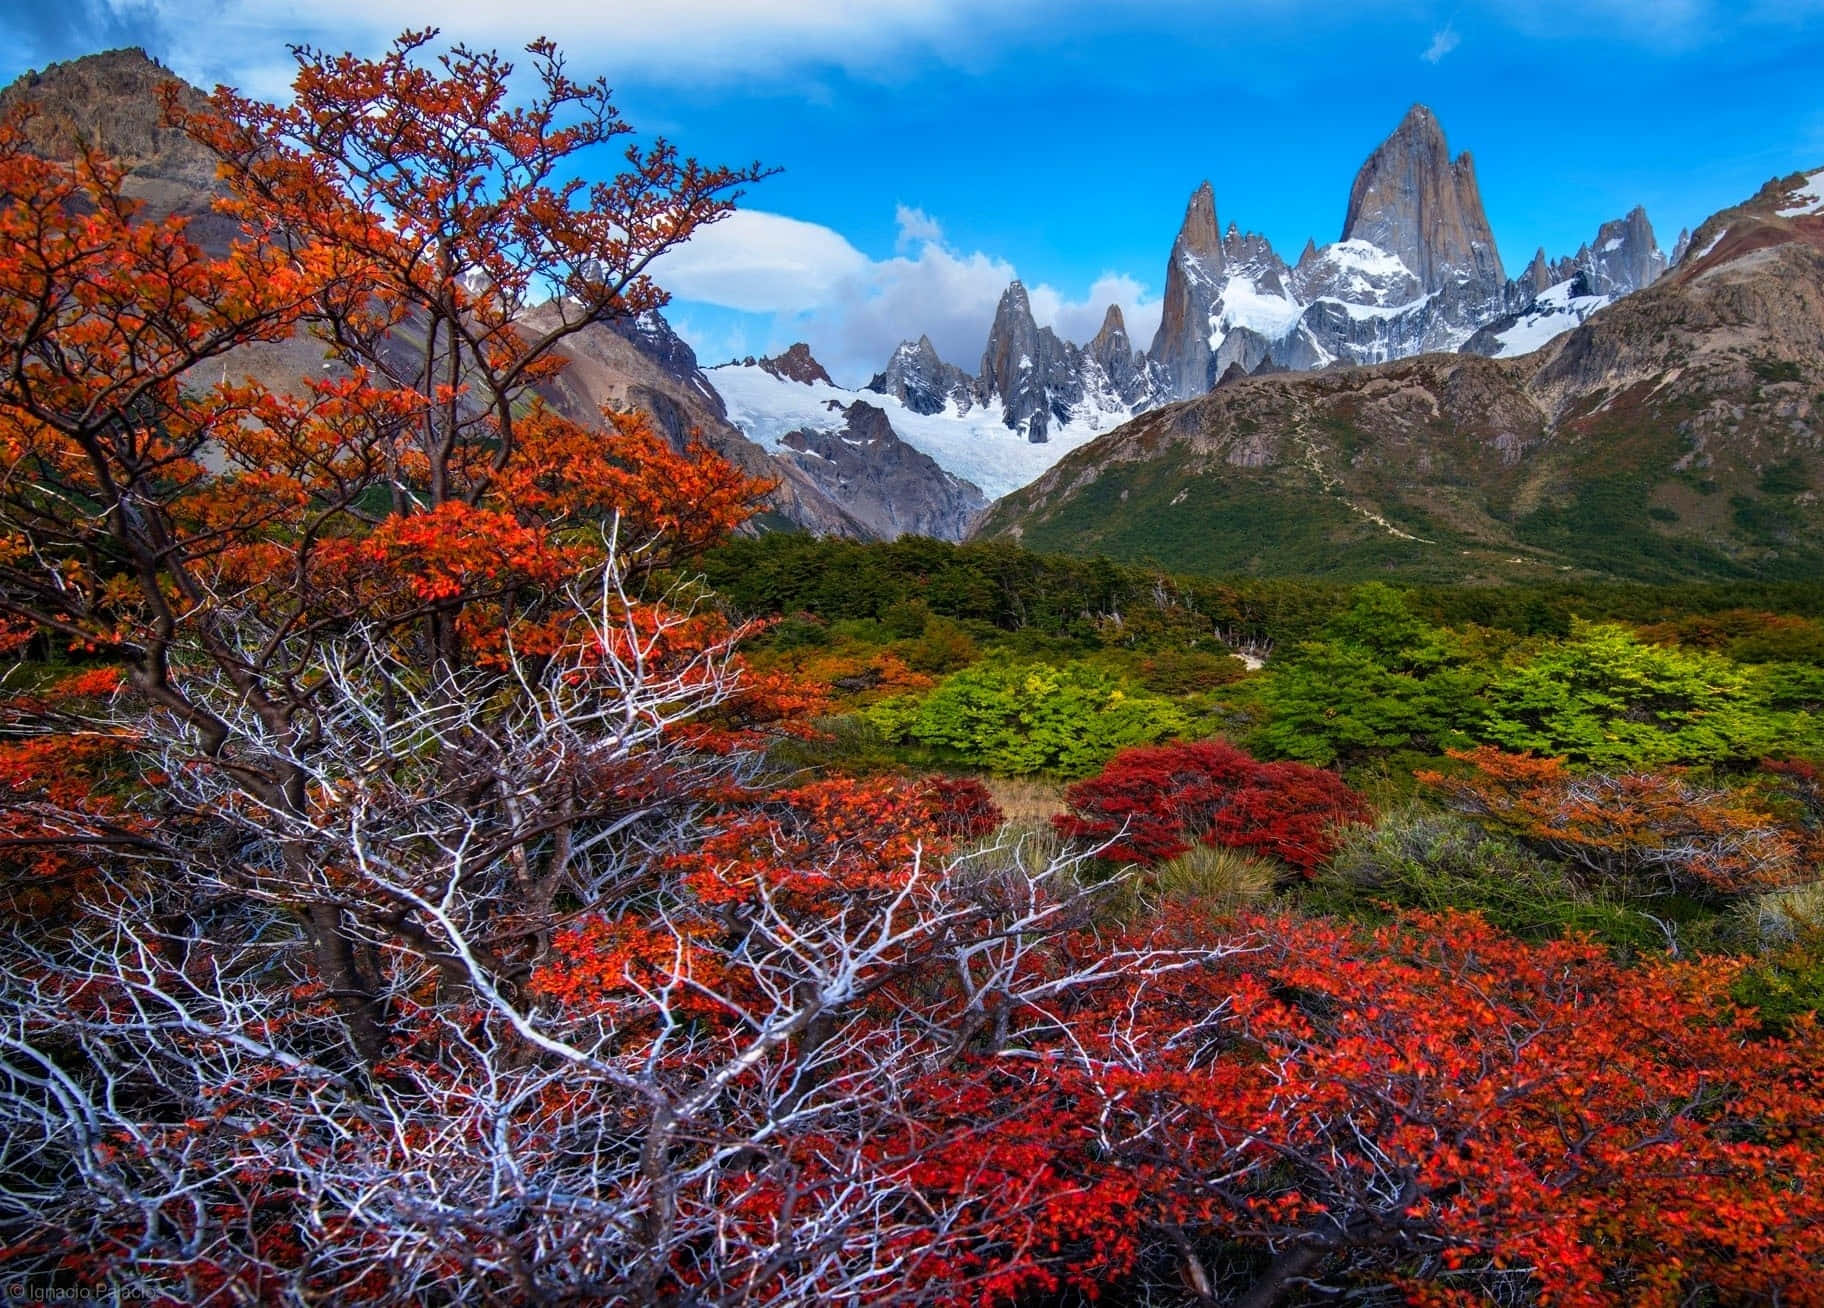 Siéntetemaravillado Por La Belleza De La Patagonia.